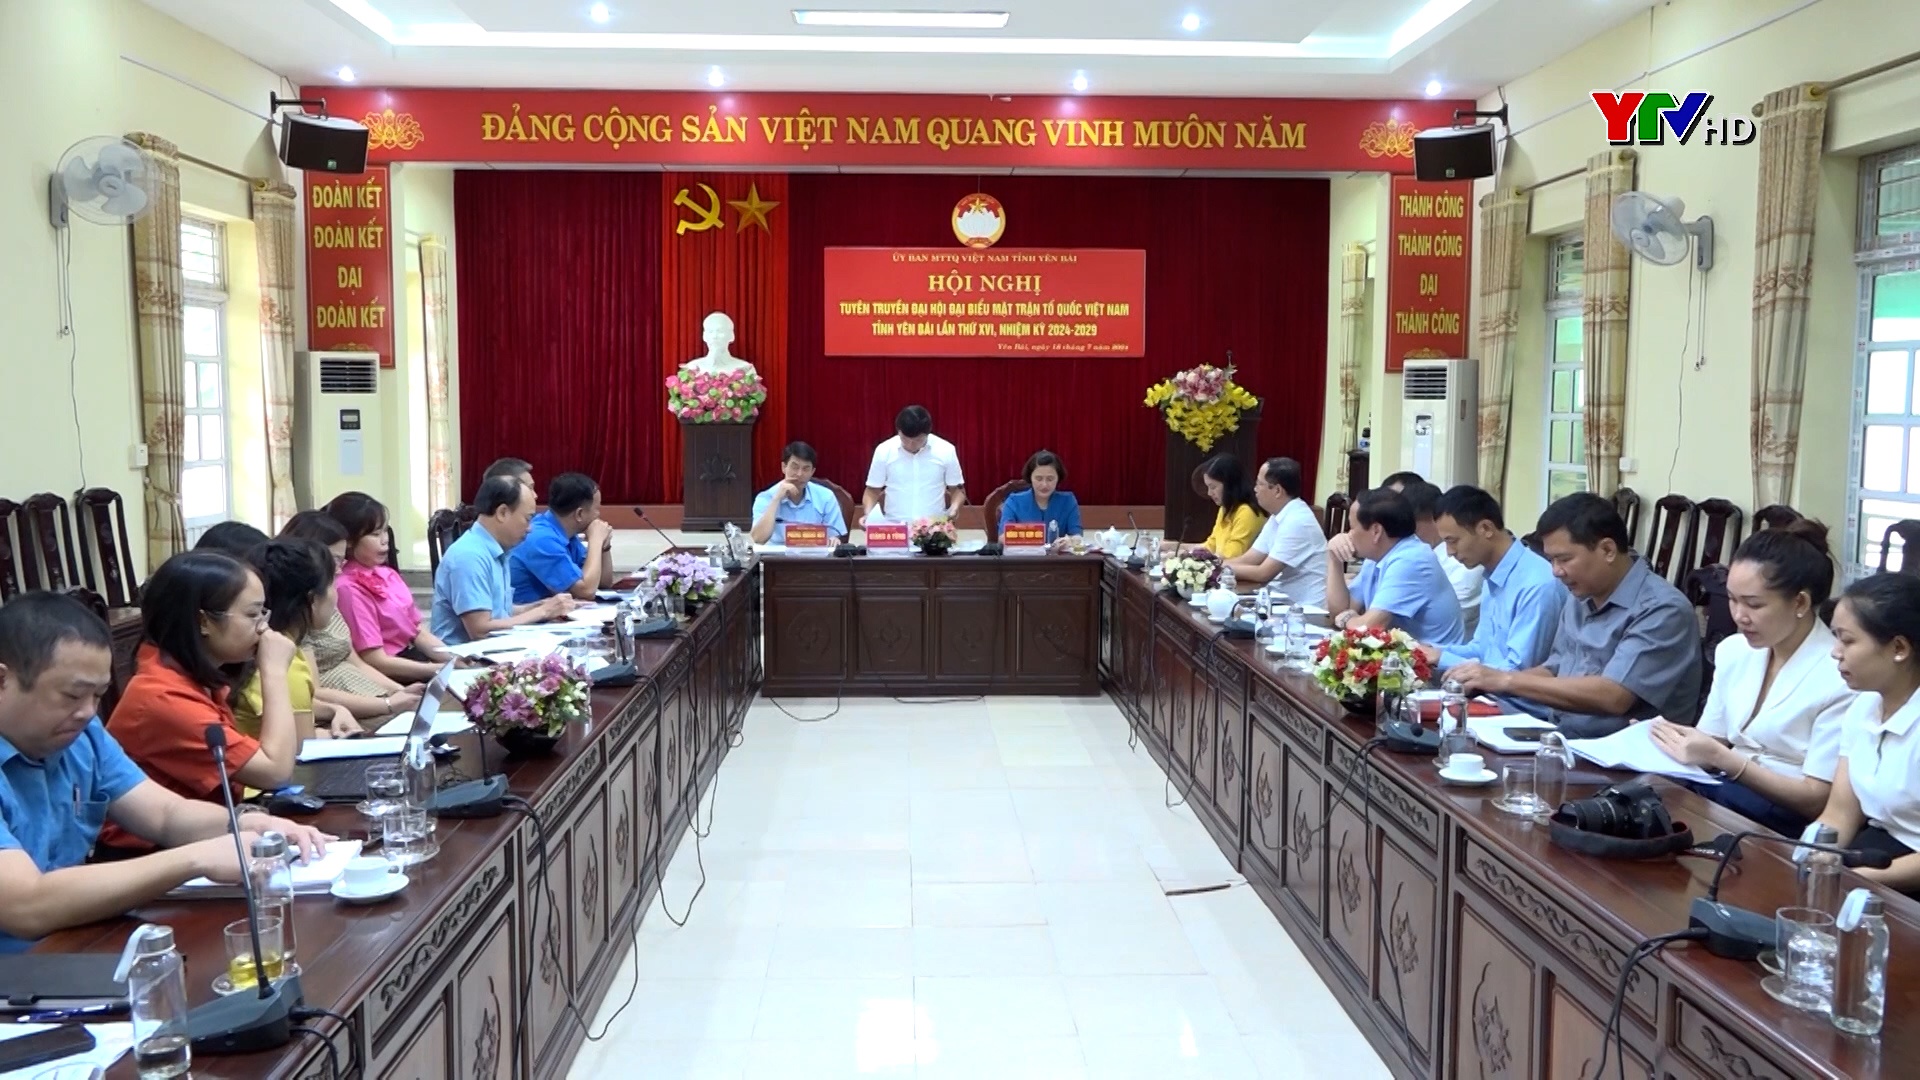 Đại hội đại biểu MTTQ tỉnh Yên Bái lần thứ XVI sẽ diễn ra ngày 23 và 24/7